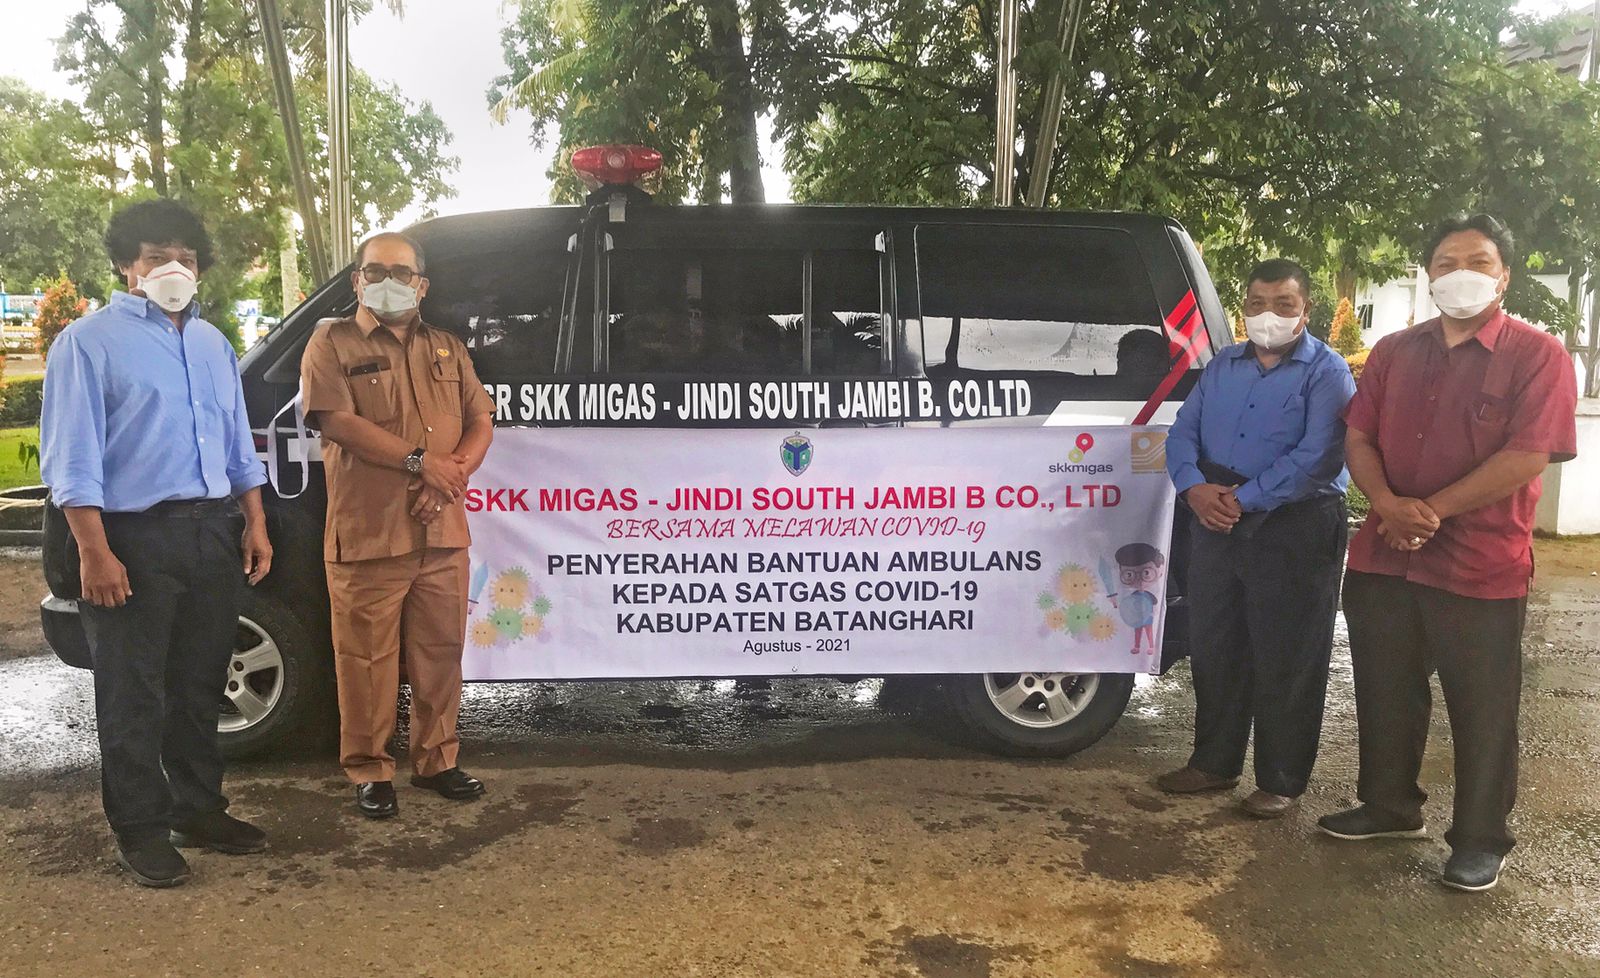 SKK Migas – KKKS Jindi South Jambi B Co., Ltd Berikan Bantuan Ambulans Kepada Satgas Covid-19 Kabupaten Batanghari